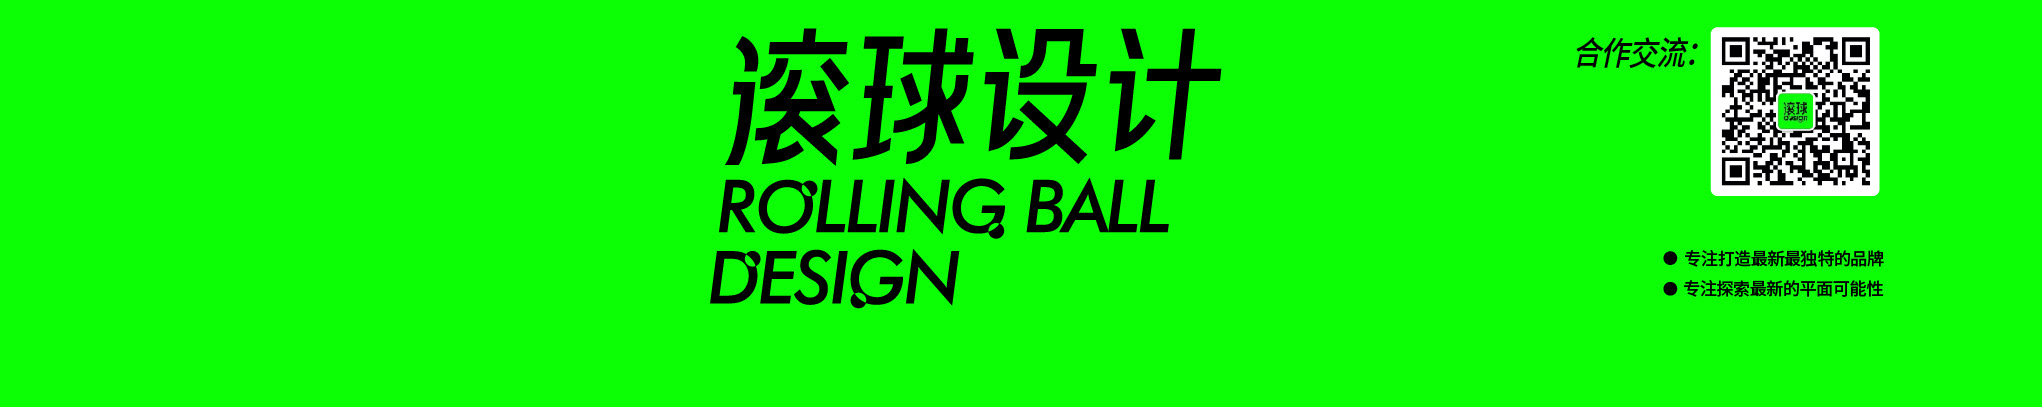 滚球设计 RBD DESIGN のプロファイルバナー